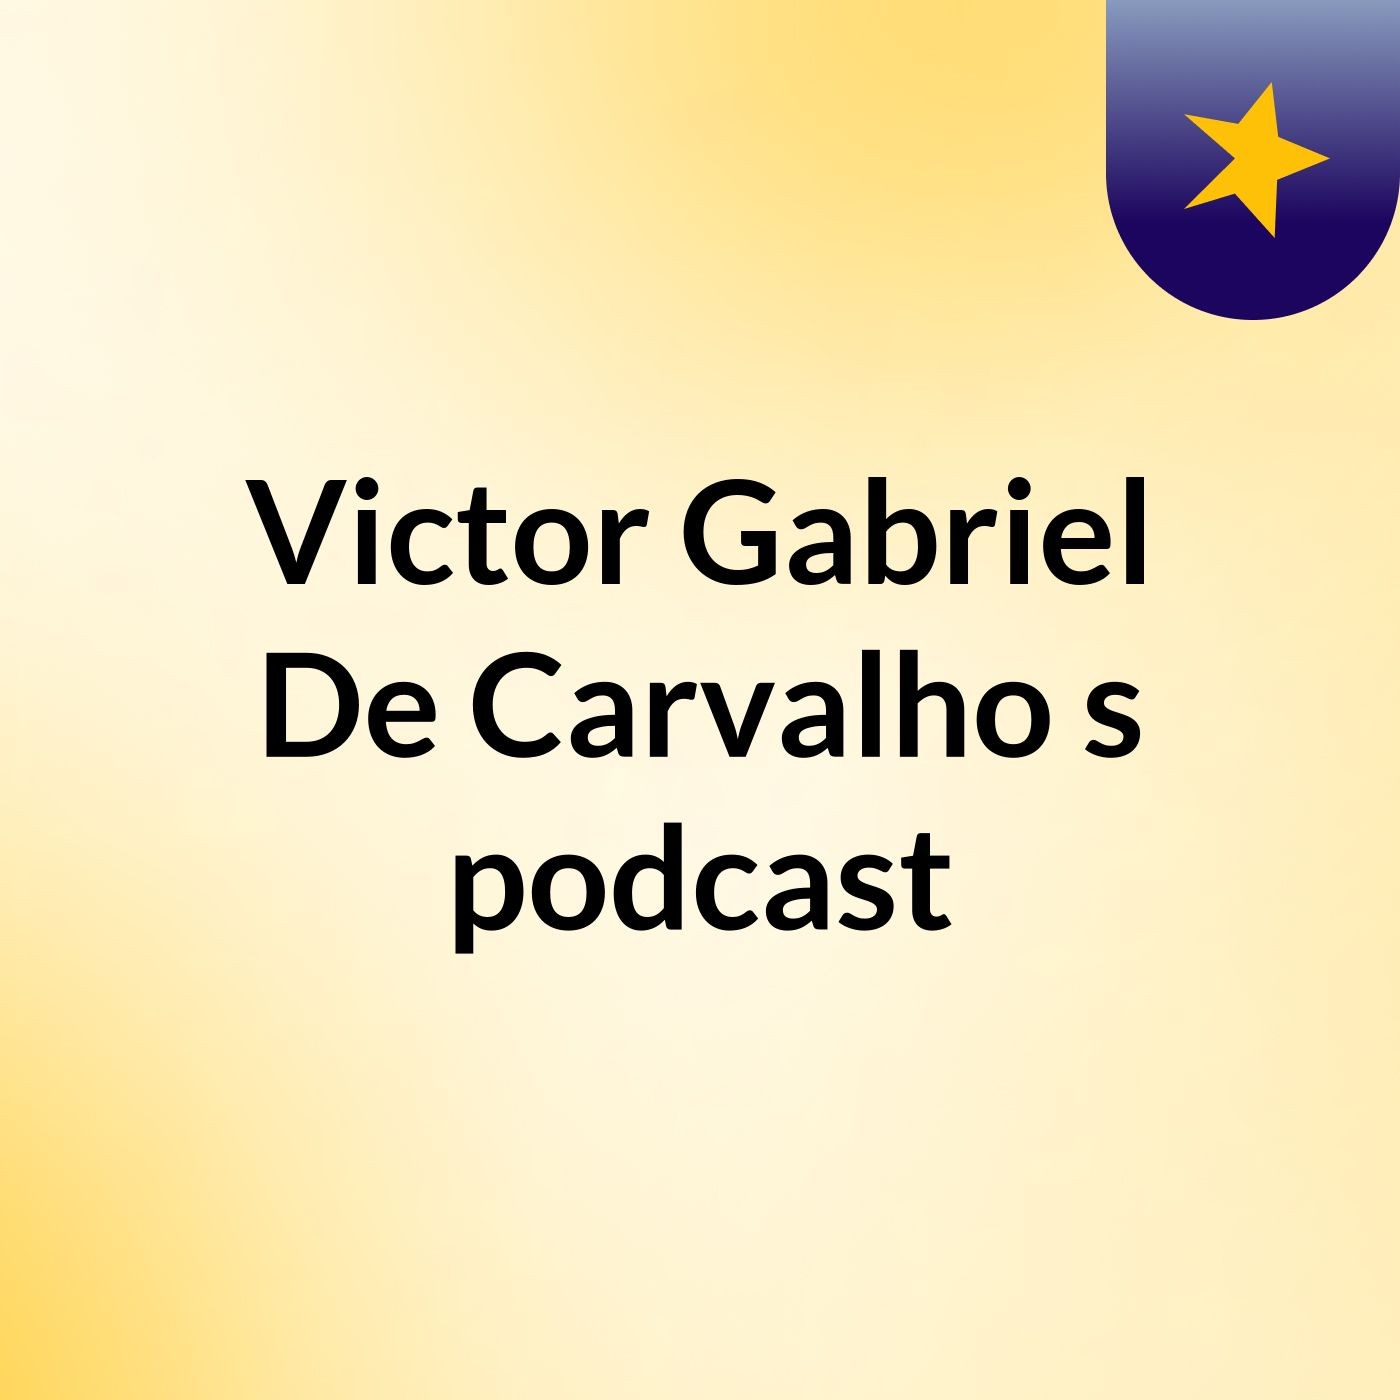 Victor Gabriel De Carvalho's podcast